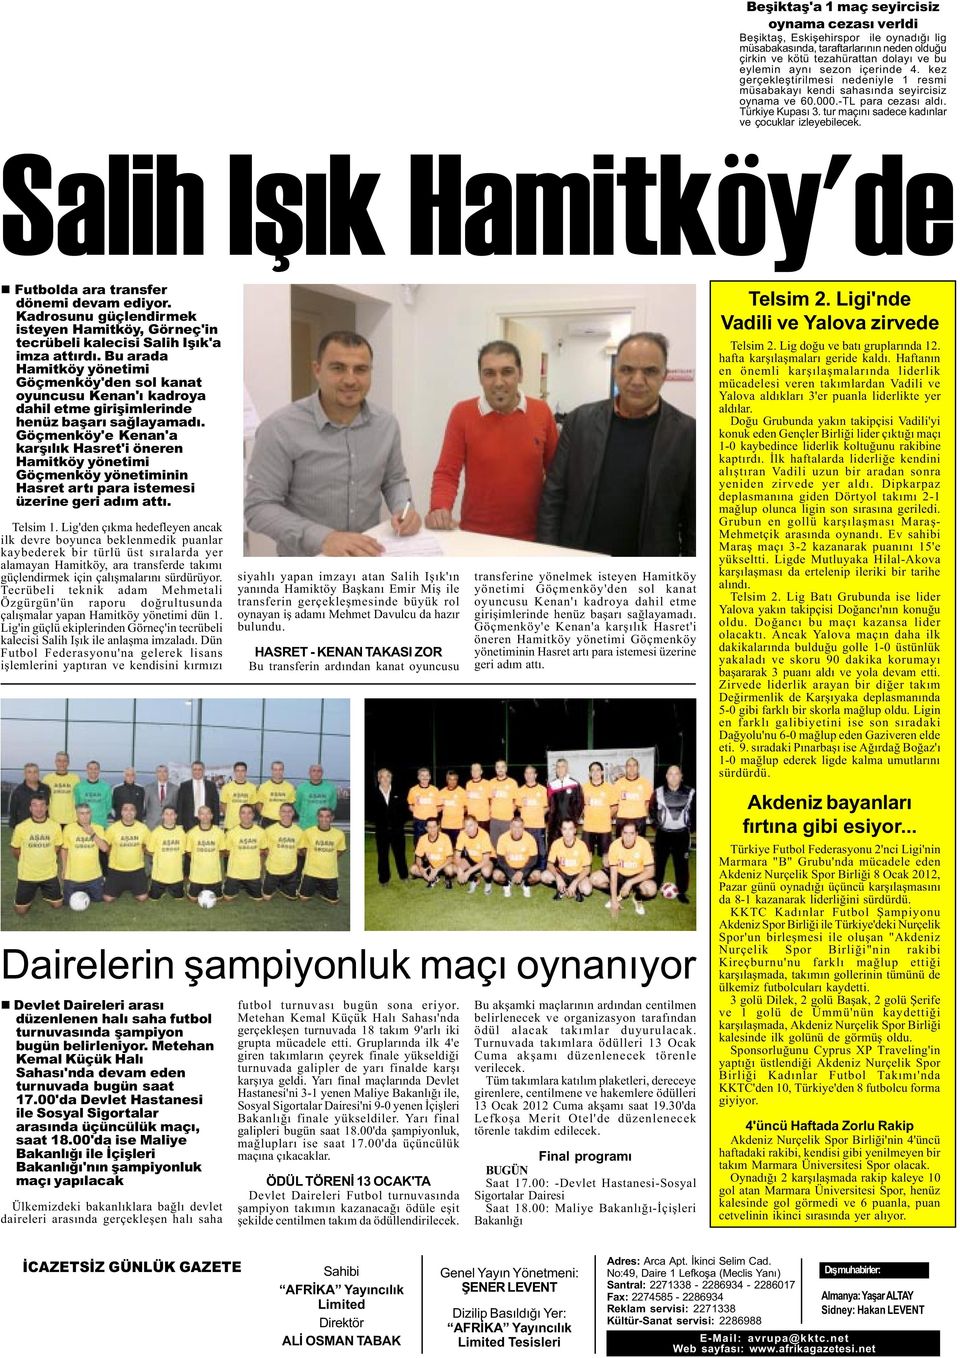 tur maçýný sadece kadýnlar ve çocuklar izleyebilecek. Salih Iþýk Hamitköy'de n Futbolda ara transfer dönemi devam ediyor.